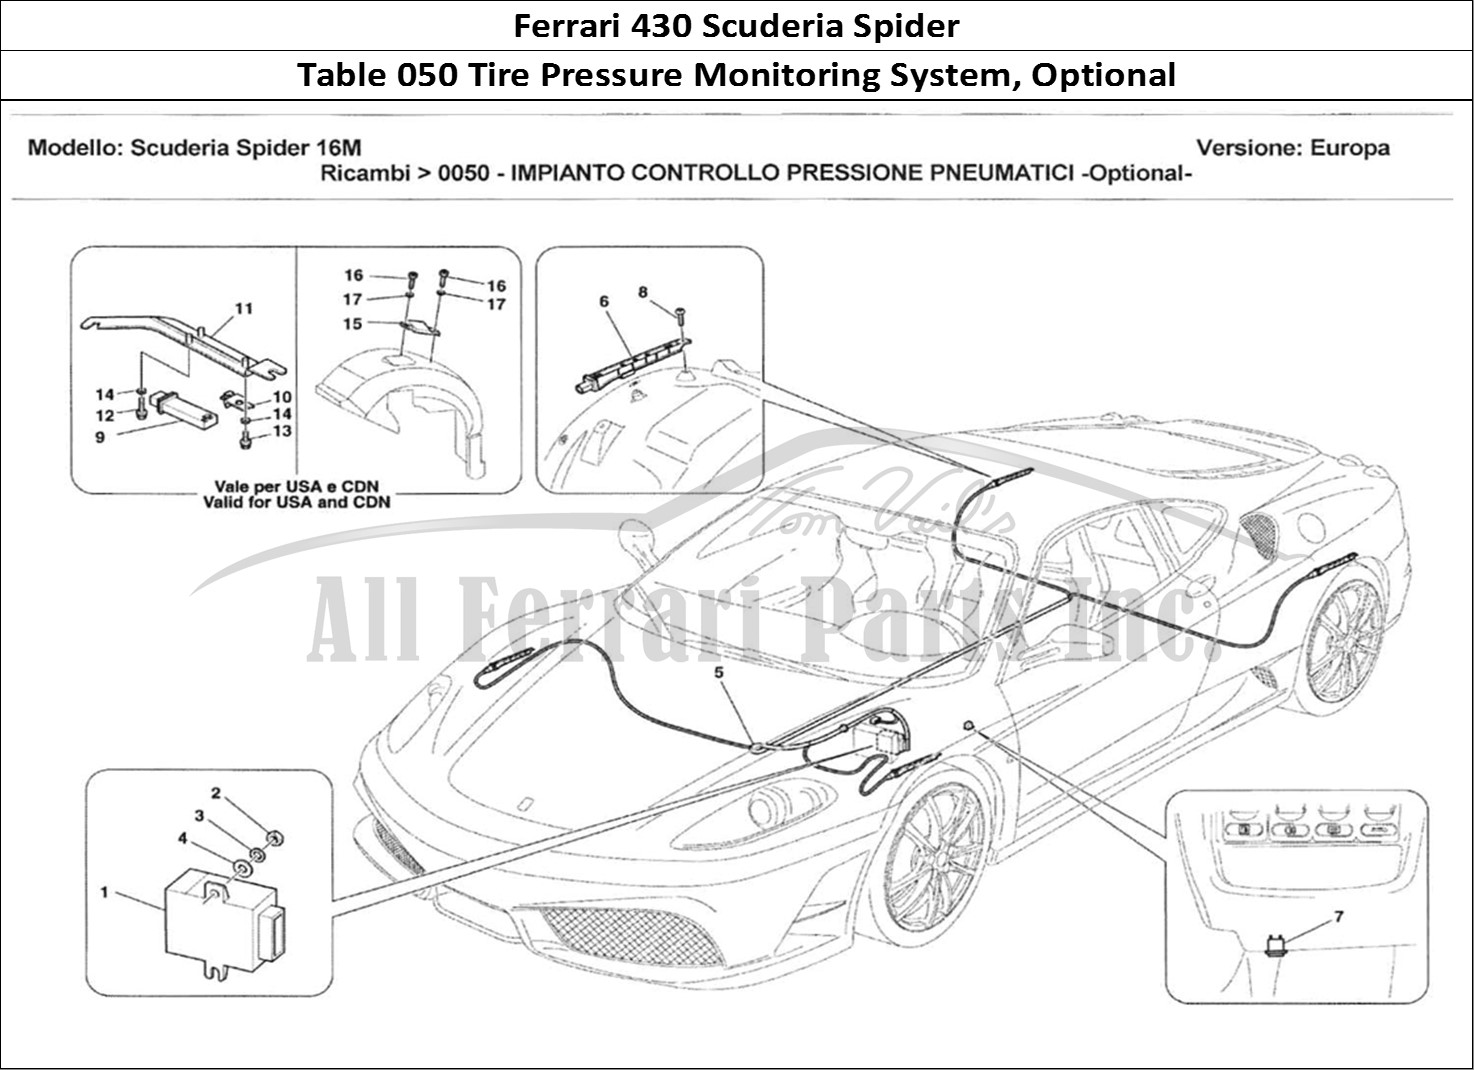 Ferrari Parts Ferrari 430 Scuderia Spider 16M Page 050 Impianto Controllo Pressi